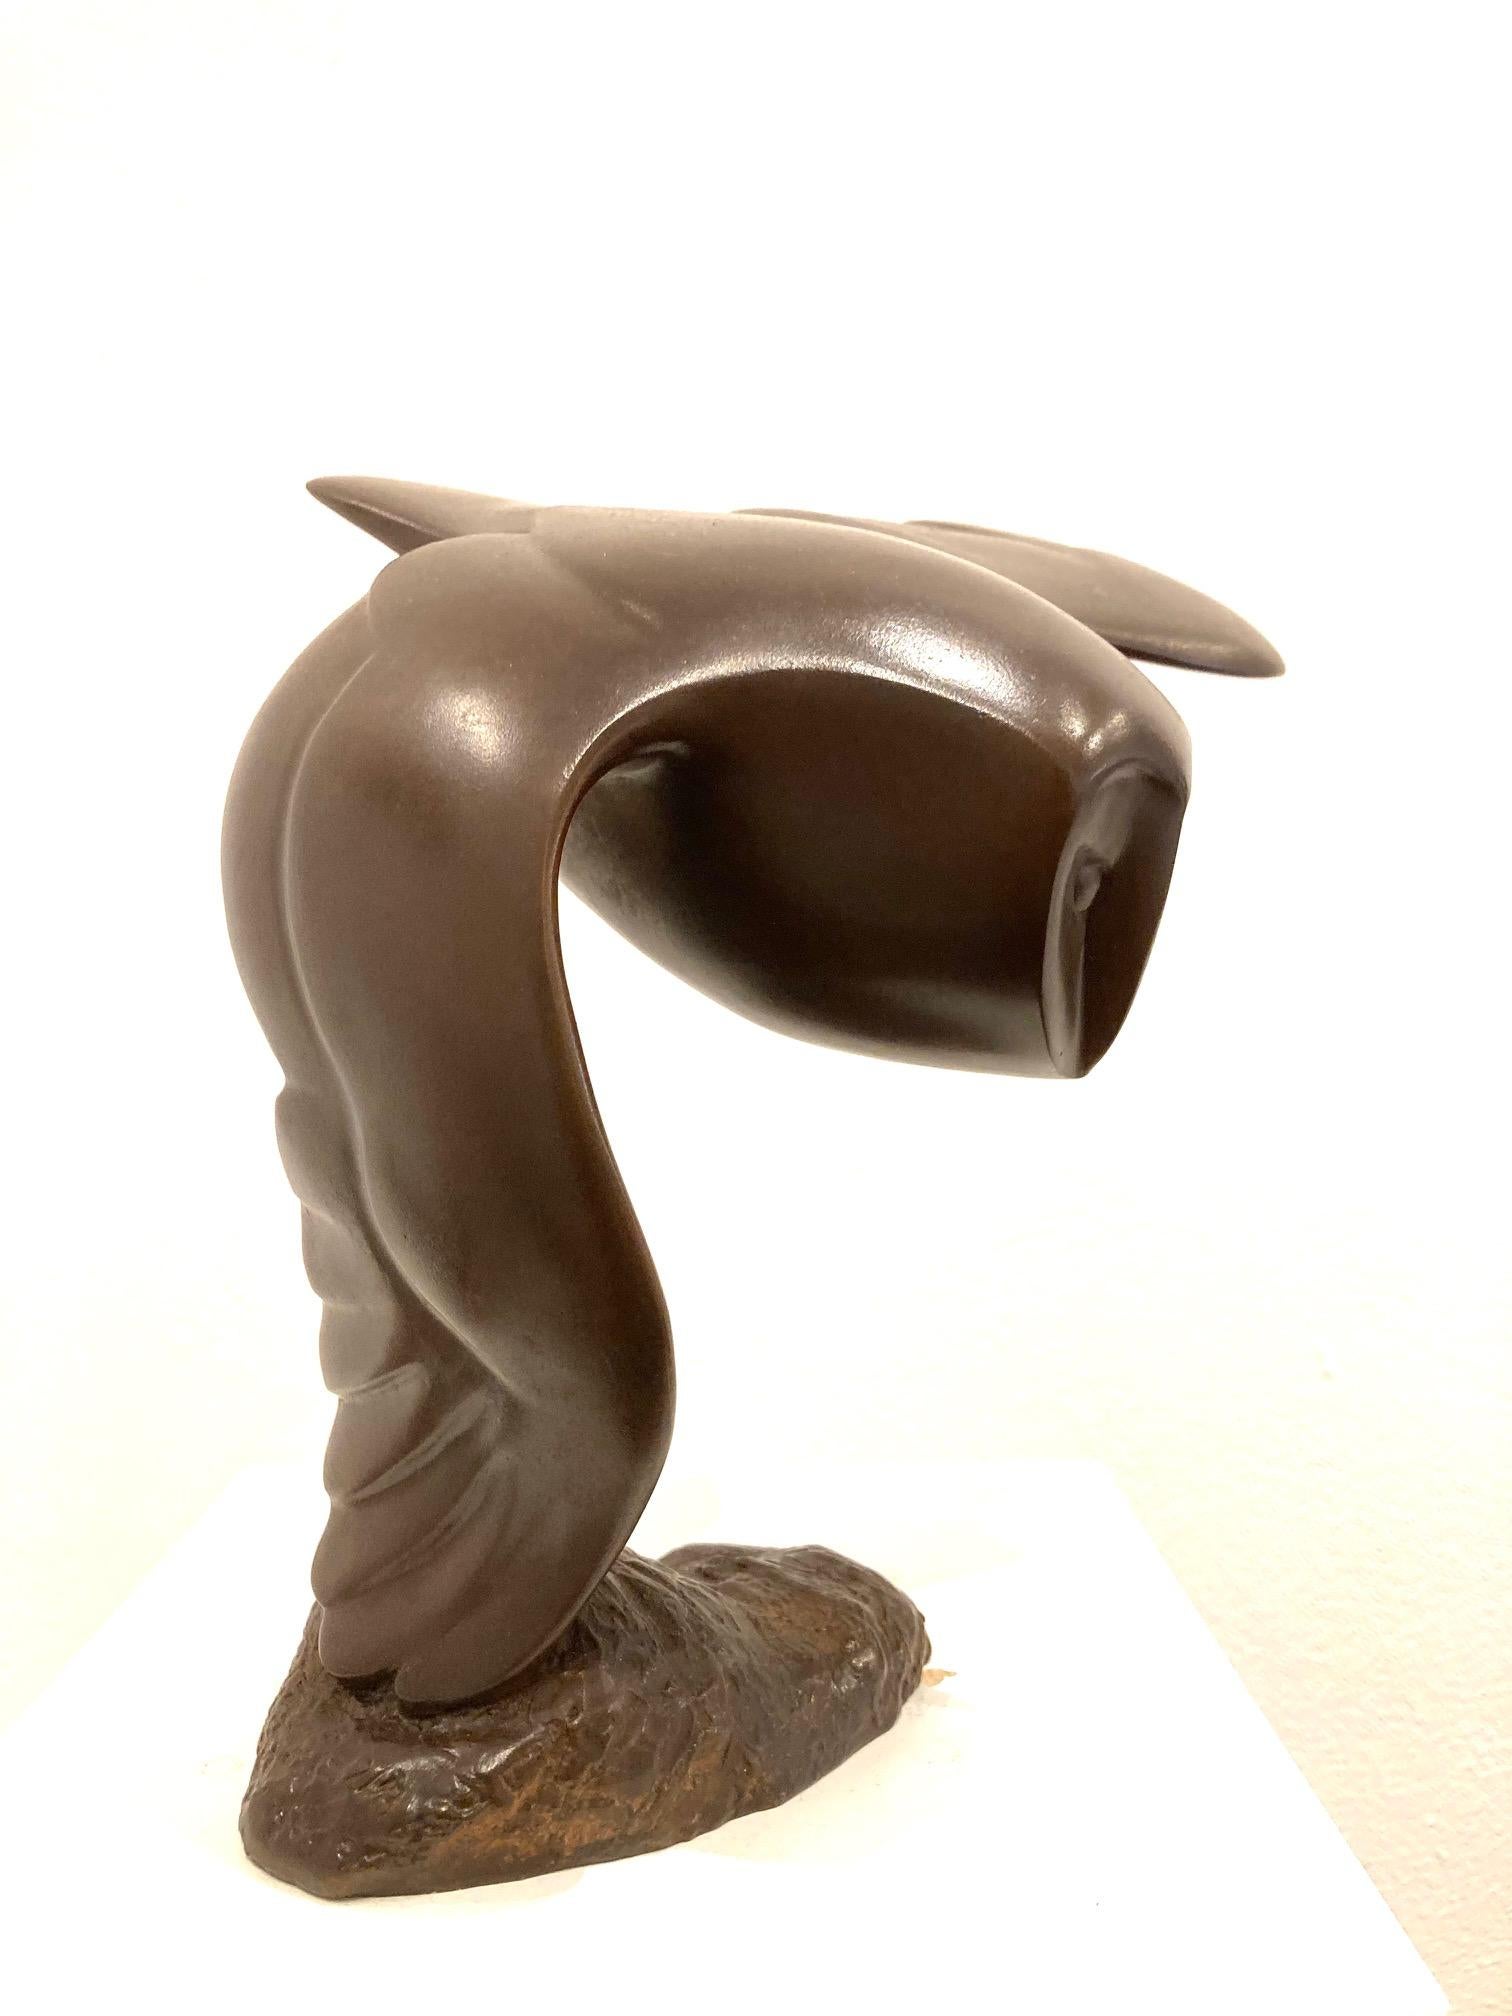 Sculpture en bronze Vliegend Uiltje - Petit oiseau hibou volant - Animaux en stock  - Or Figurative Sculpture par Evert den Hartog